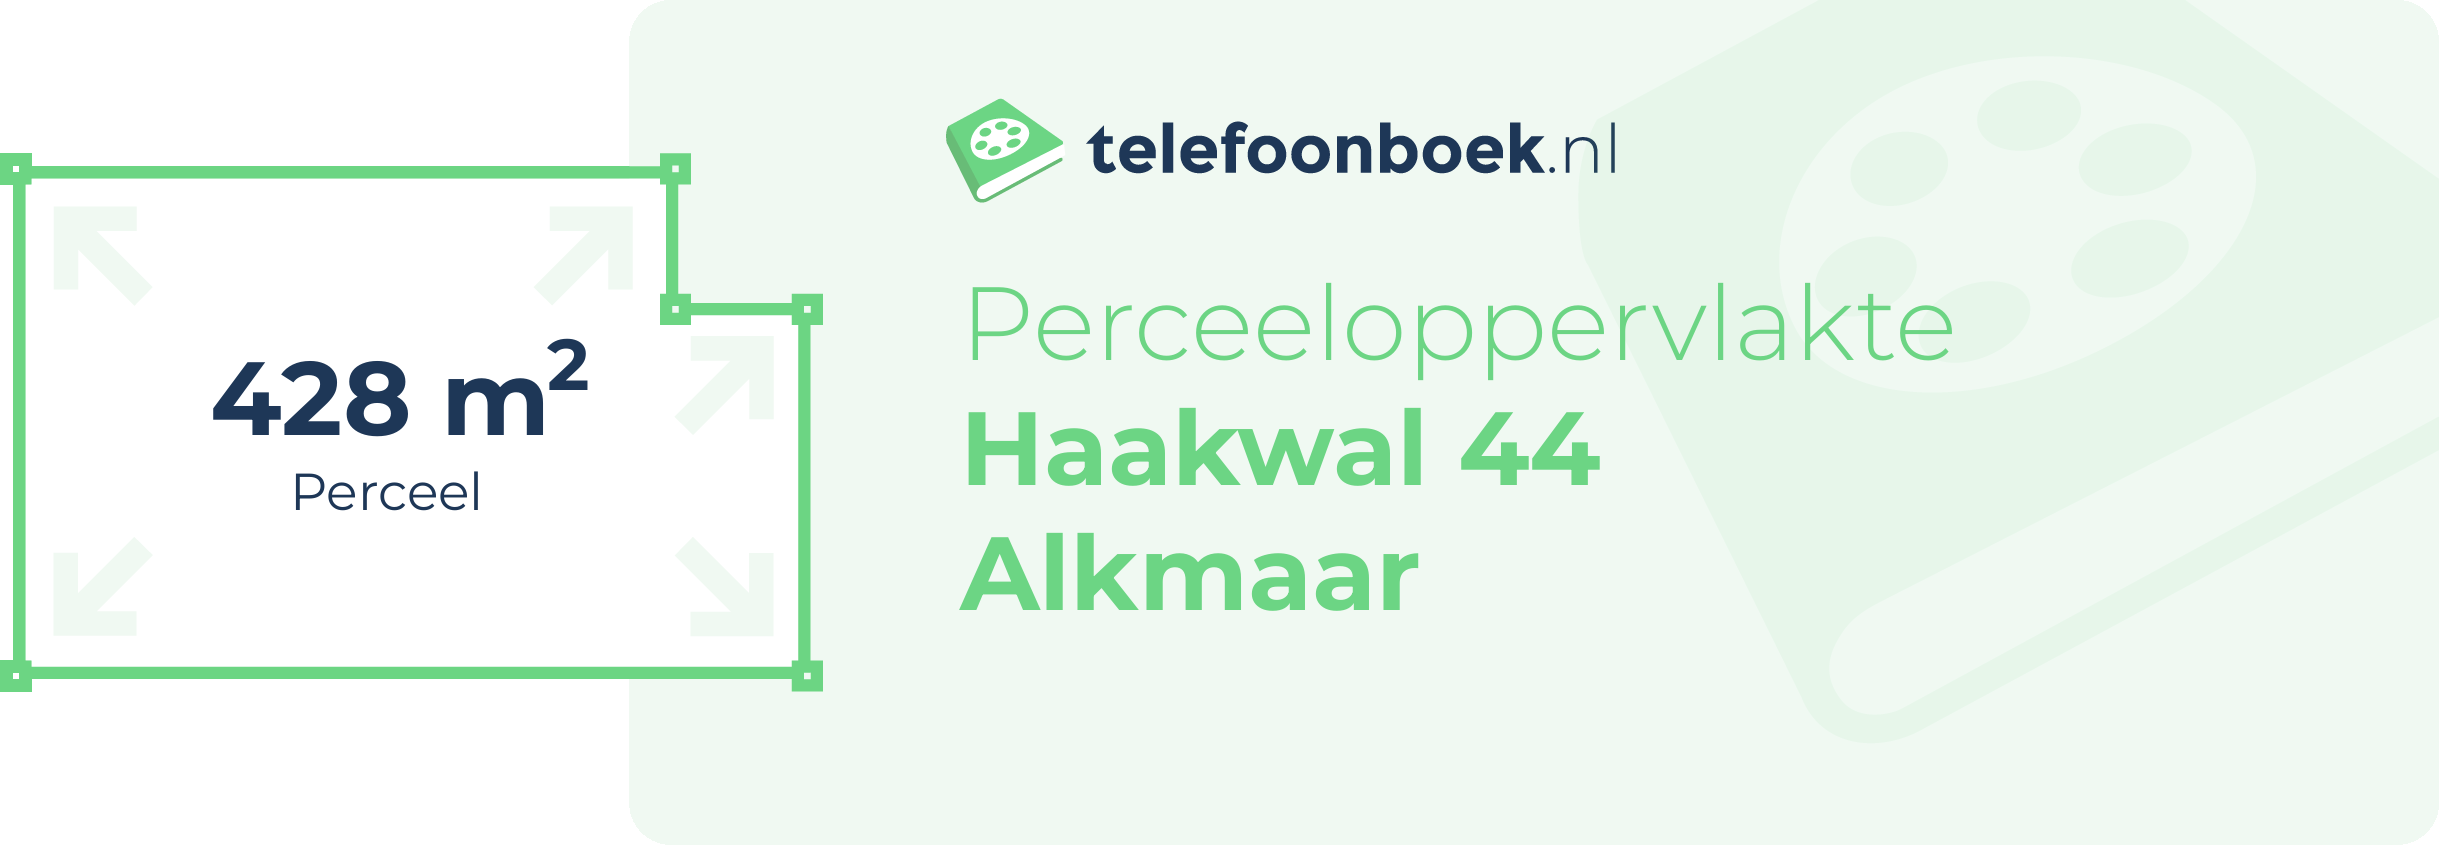 Perceeloppervlakte Haakwal 44 Alkmaar